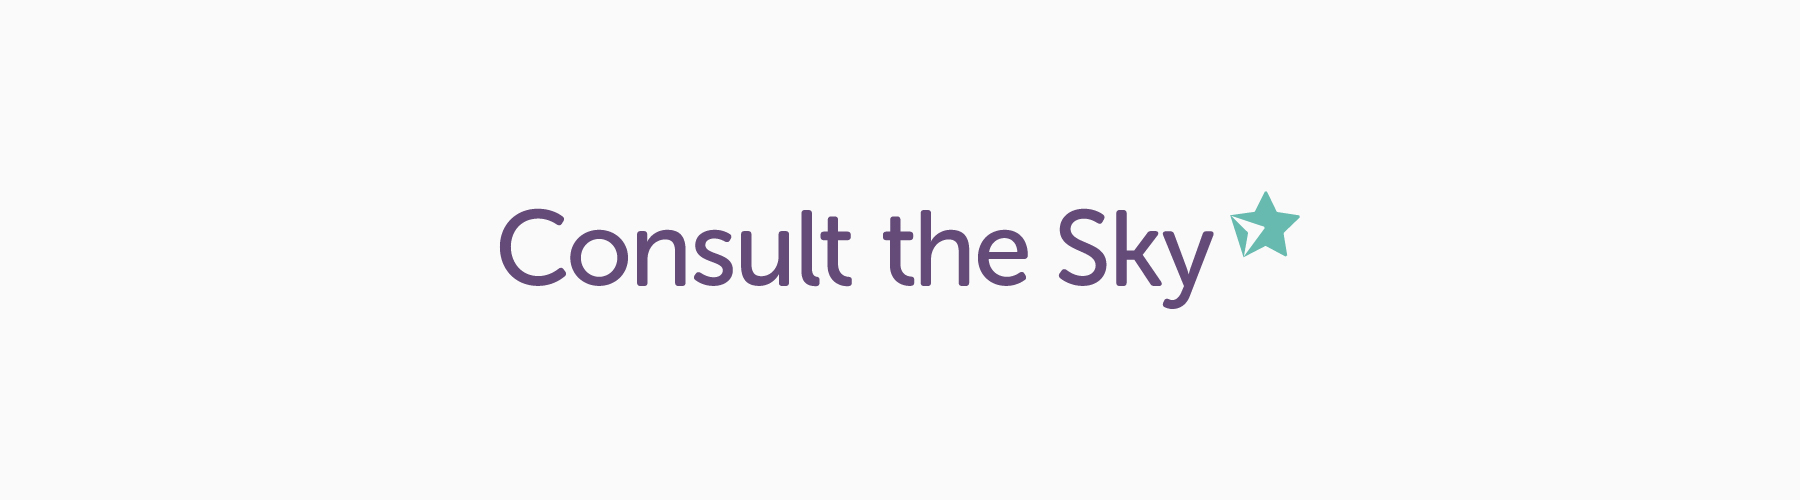 Consult the Sky logo.